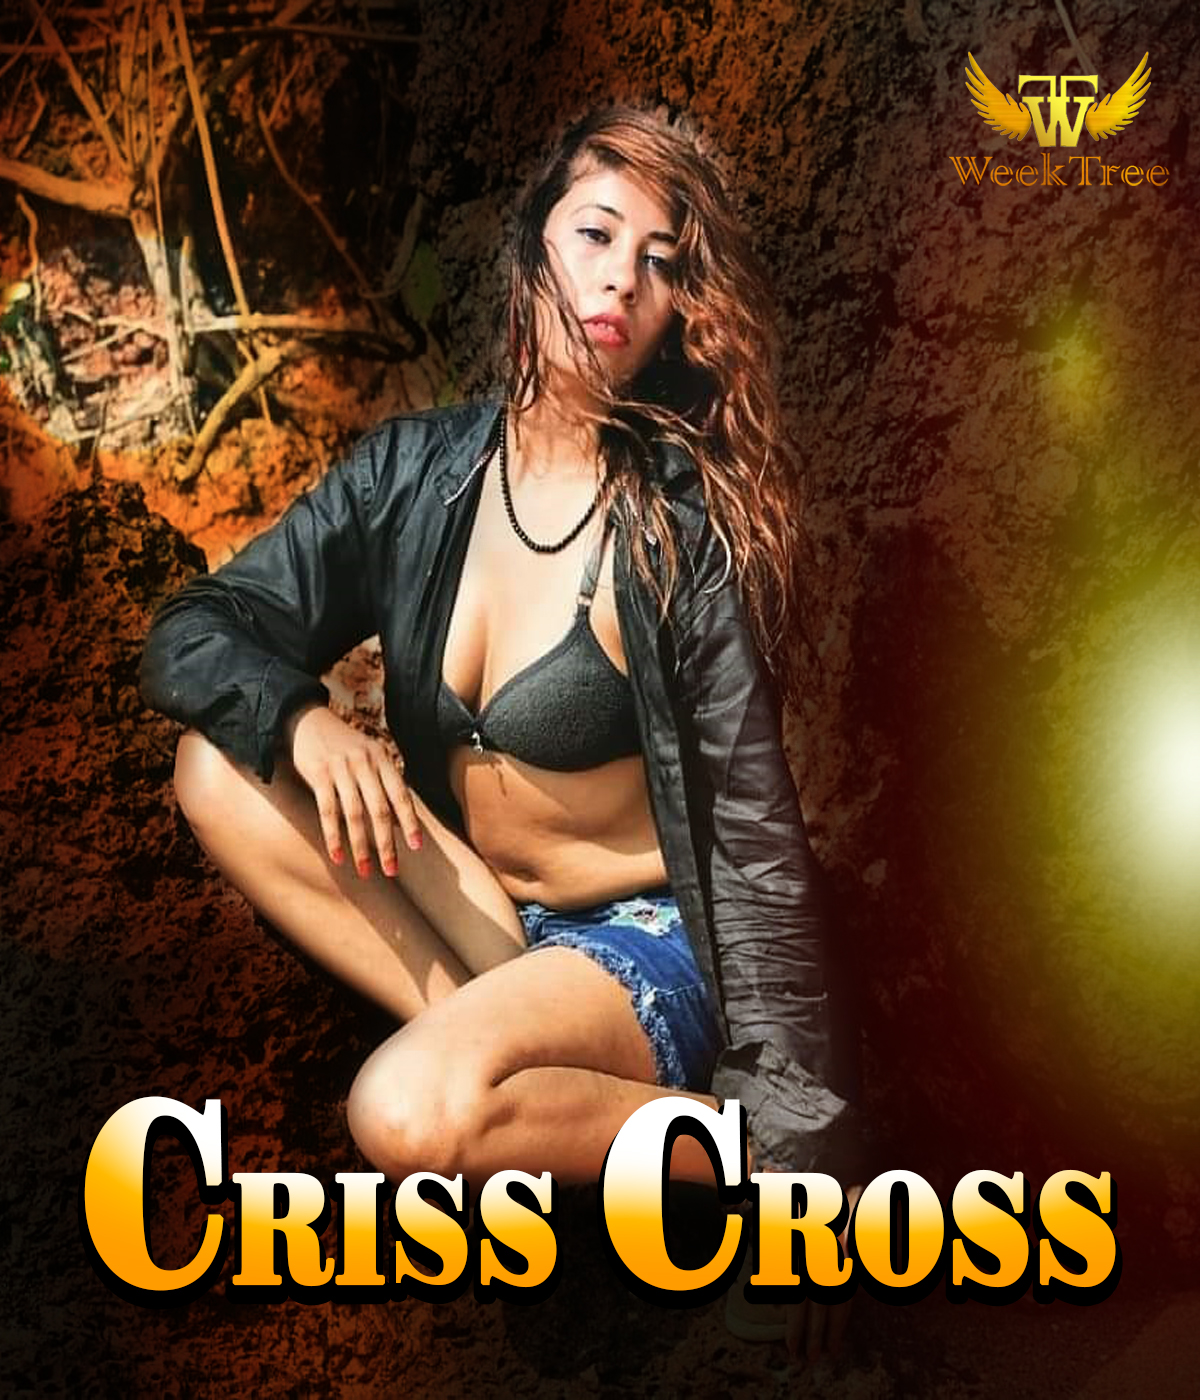 Download Criss Cross 2020 Weektree Original Hindi Short Film 720p HDRip 230MB